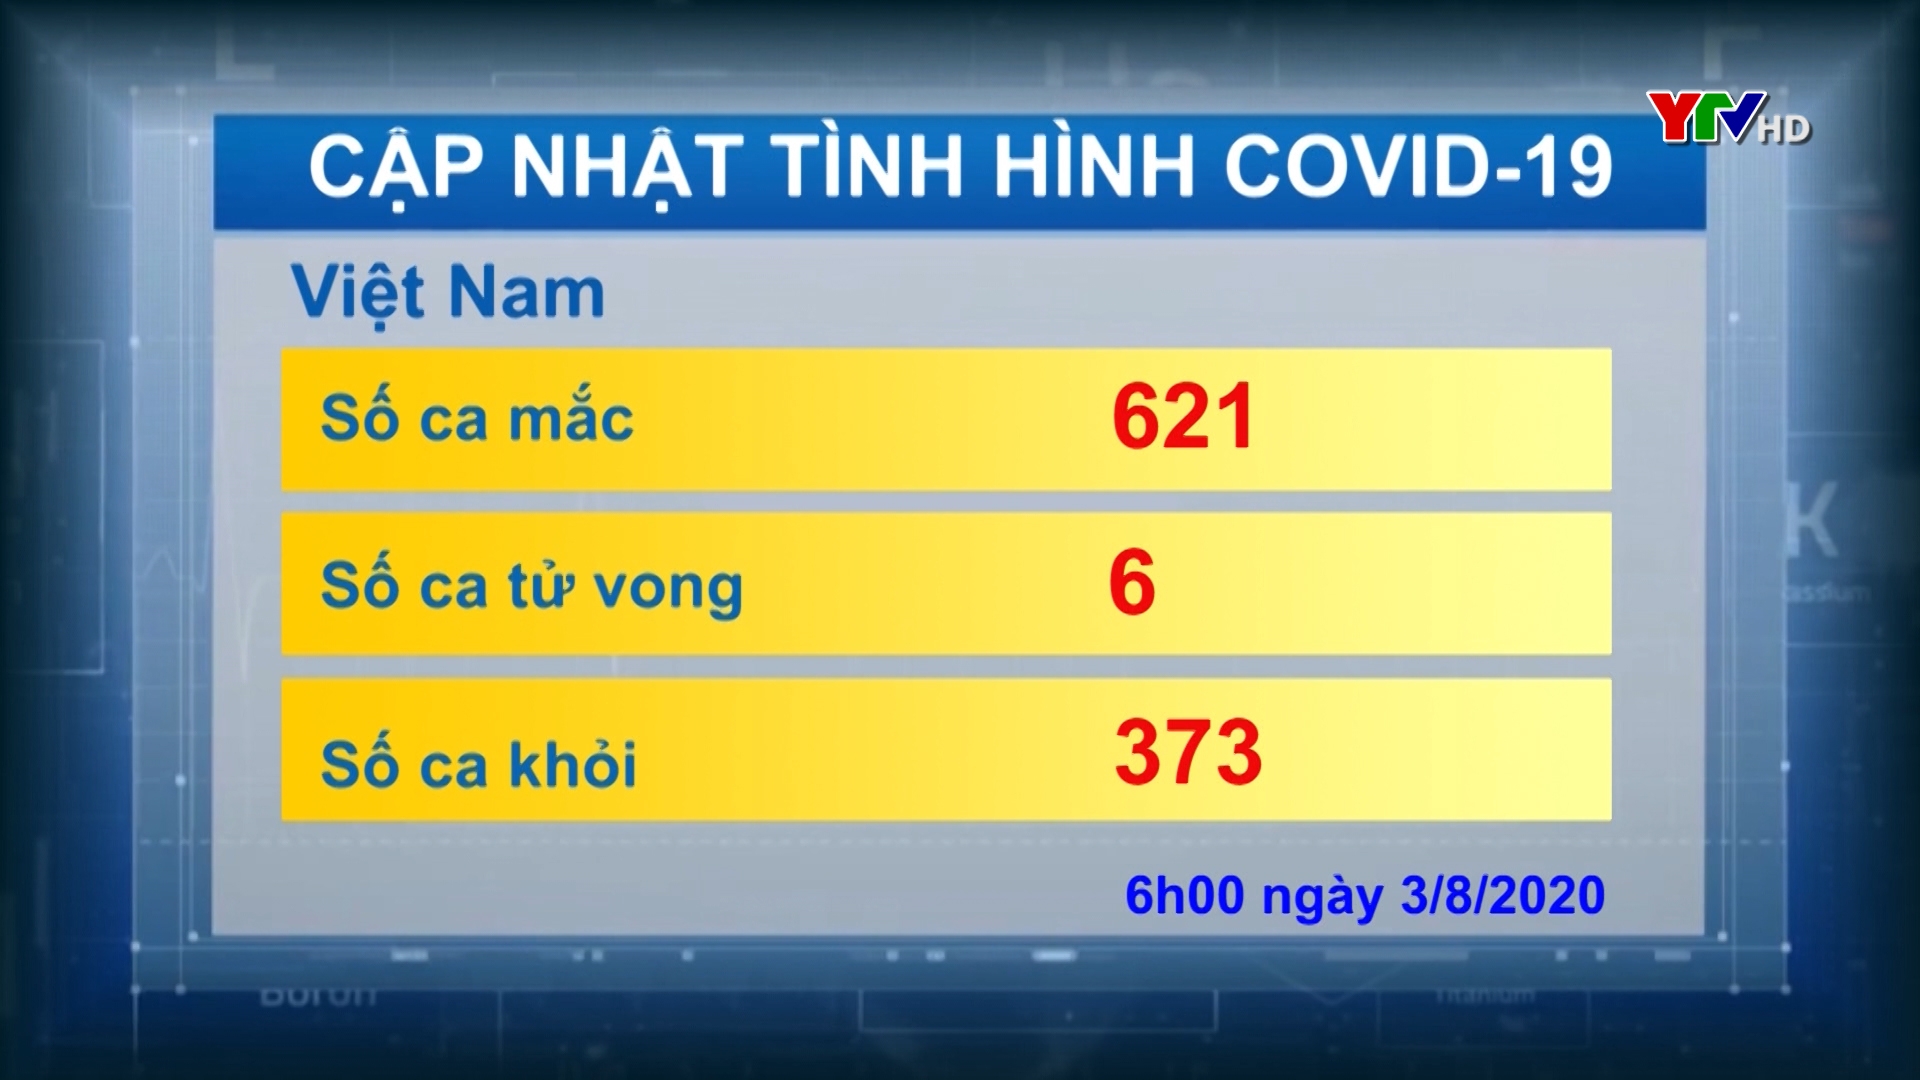 Việt Nam ghi nhận tổng số 621 ca nhiễm mới COVID - 19, có 6 trường hợp tử vong